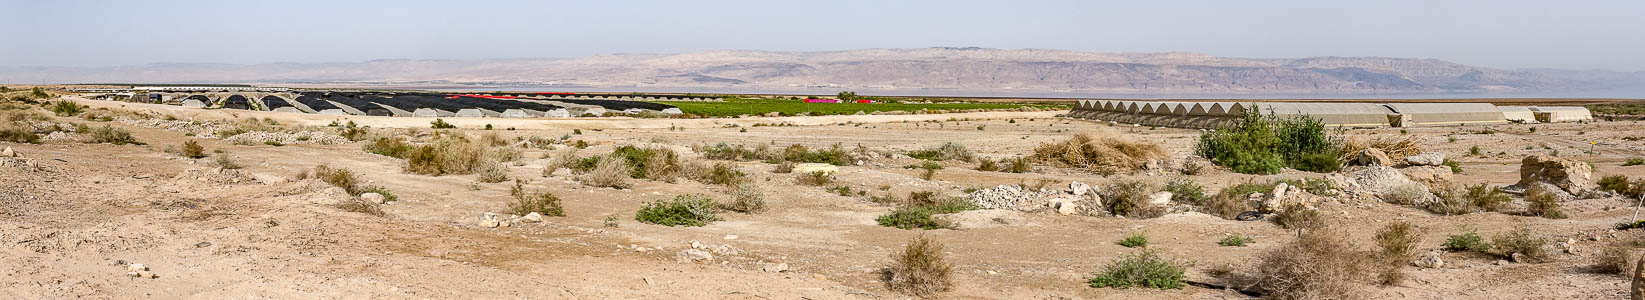 Jordantal mit Obstplantagen Qumran